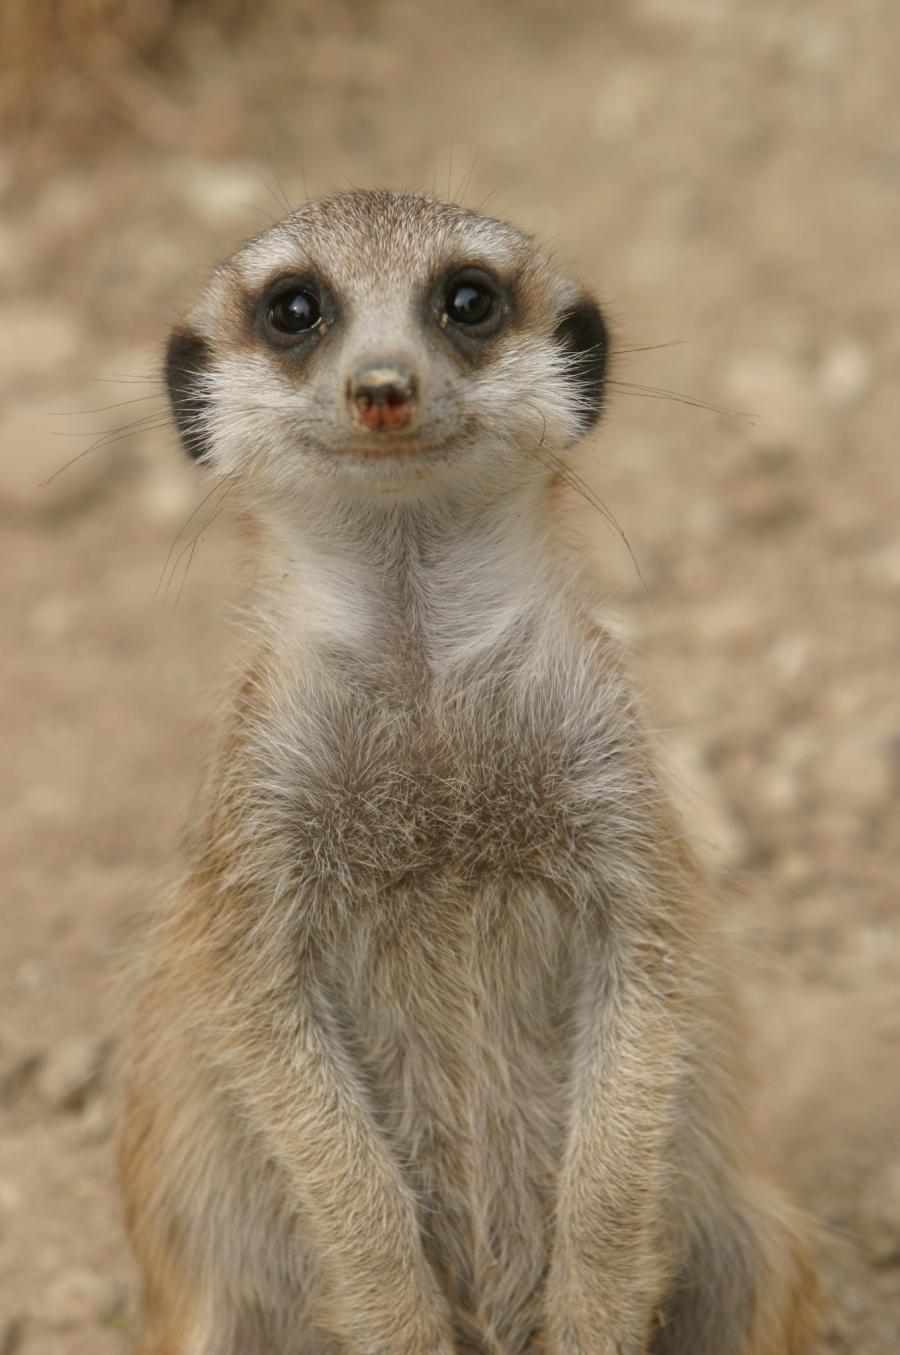 Meerkats practice altruism as when they hunt for food one meerk – Odd